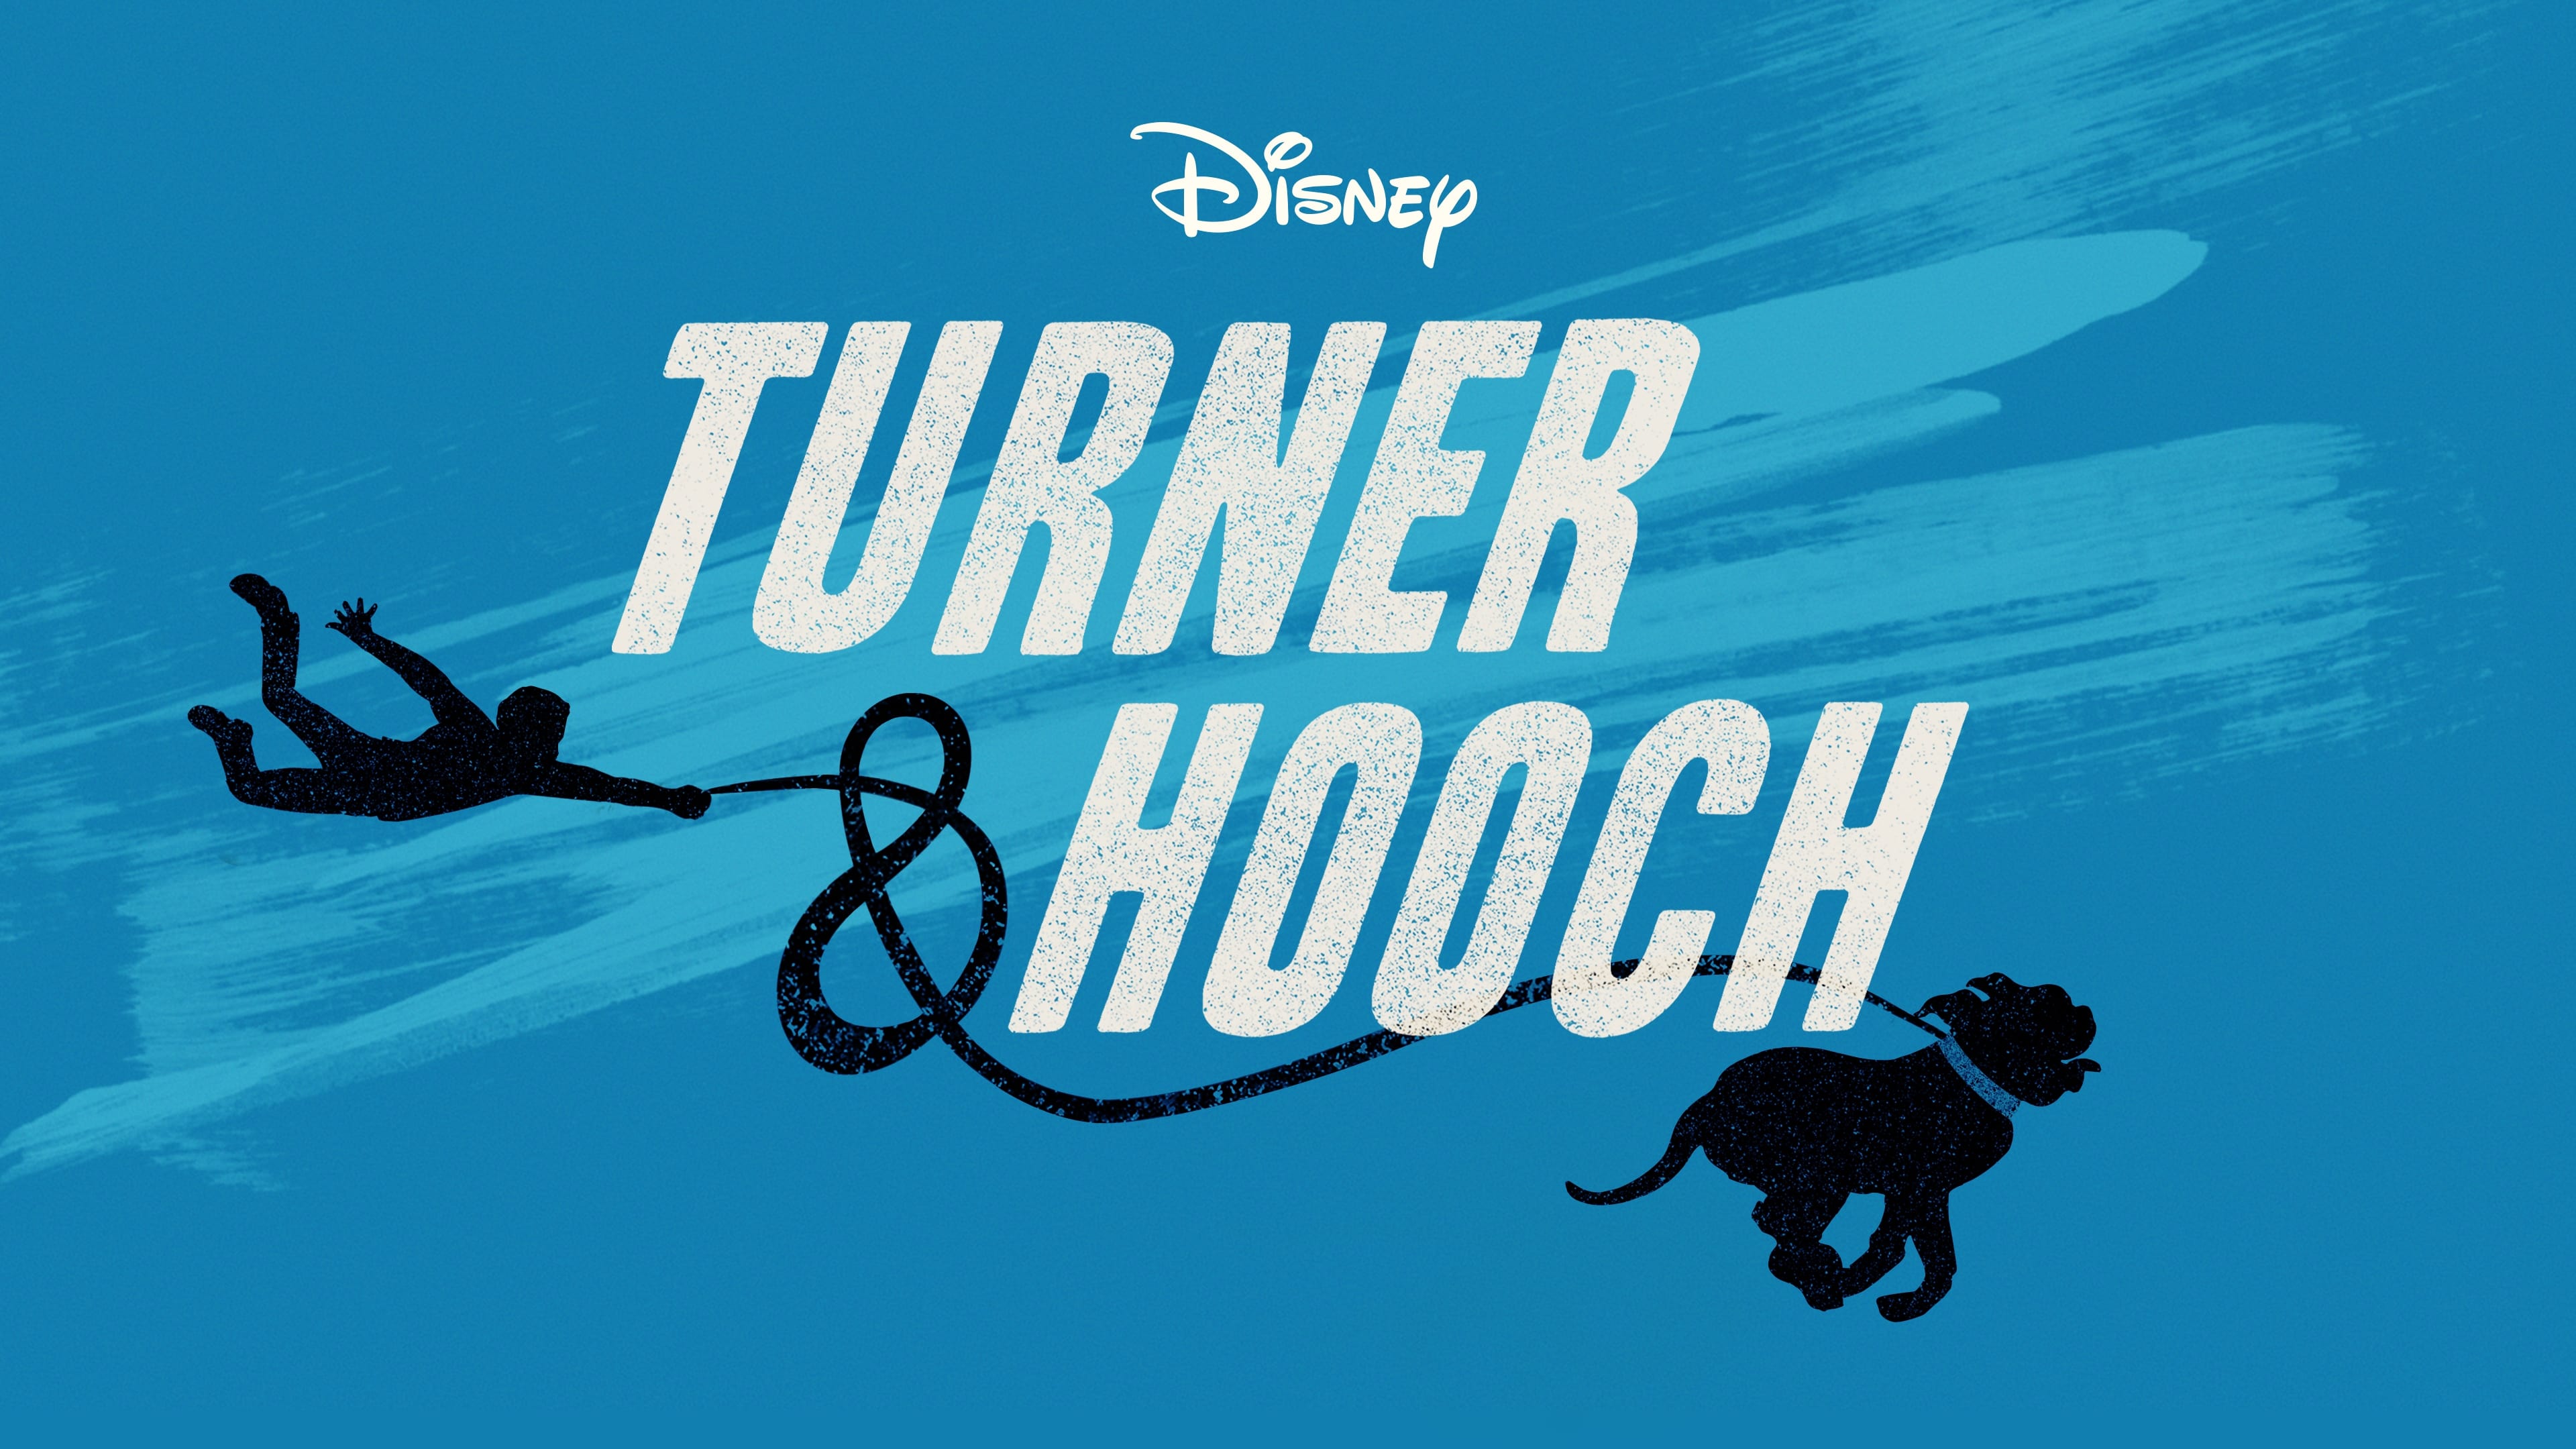 Turner & Hooch - Season 1